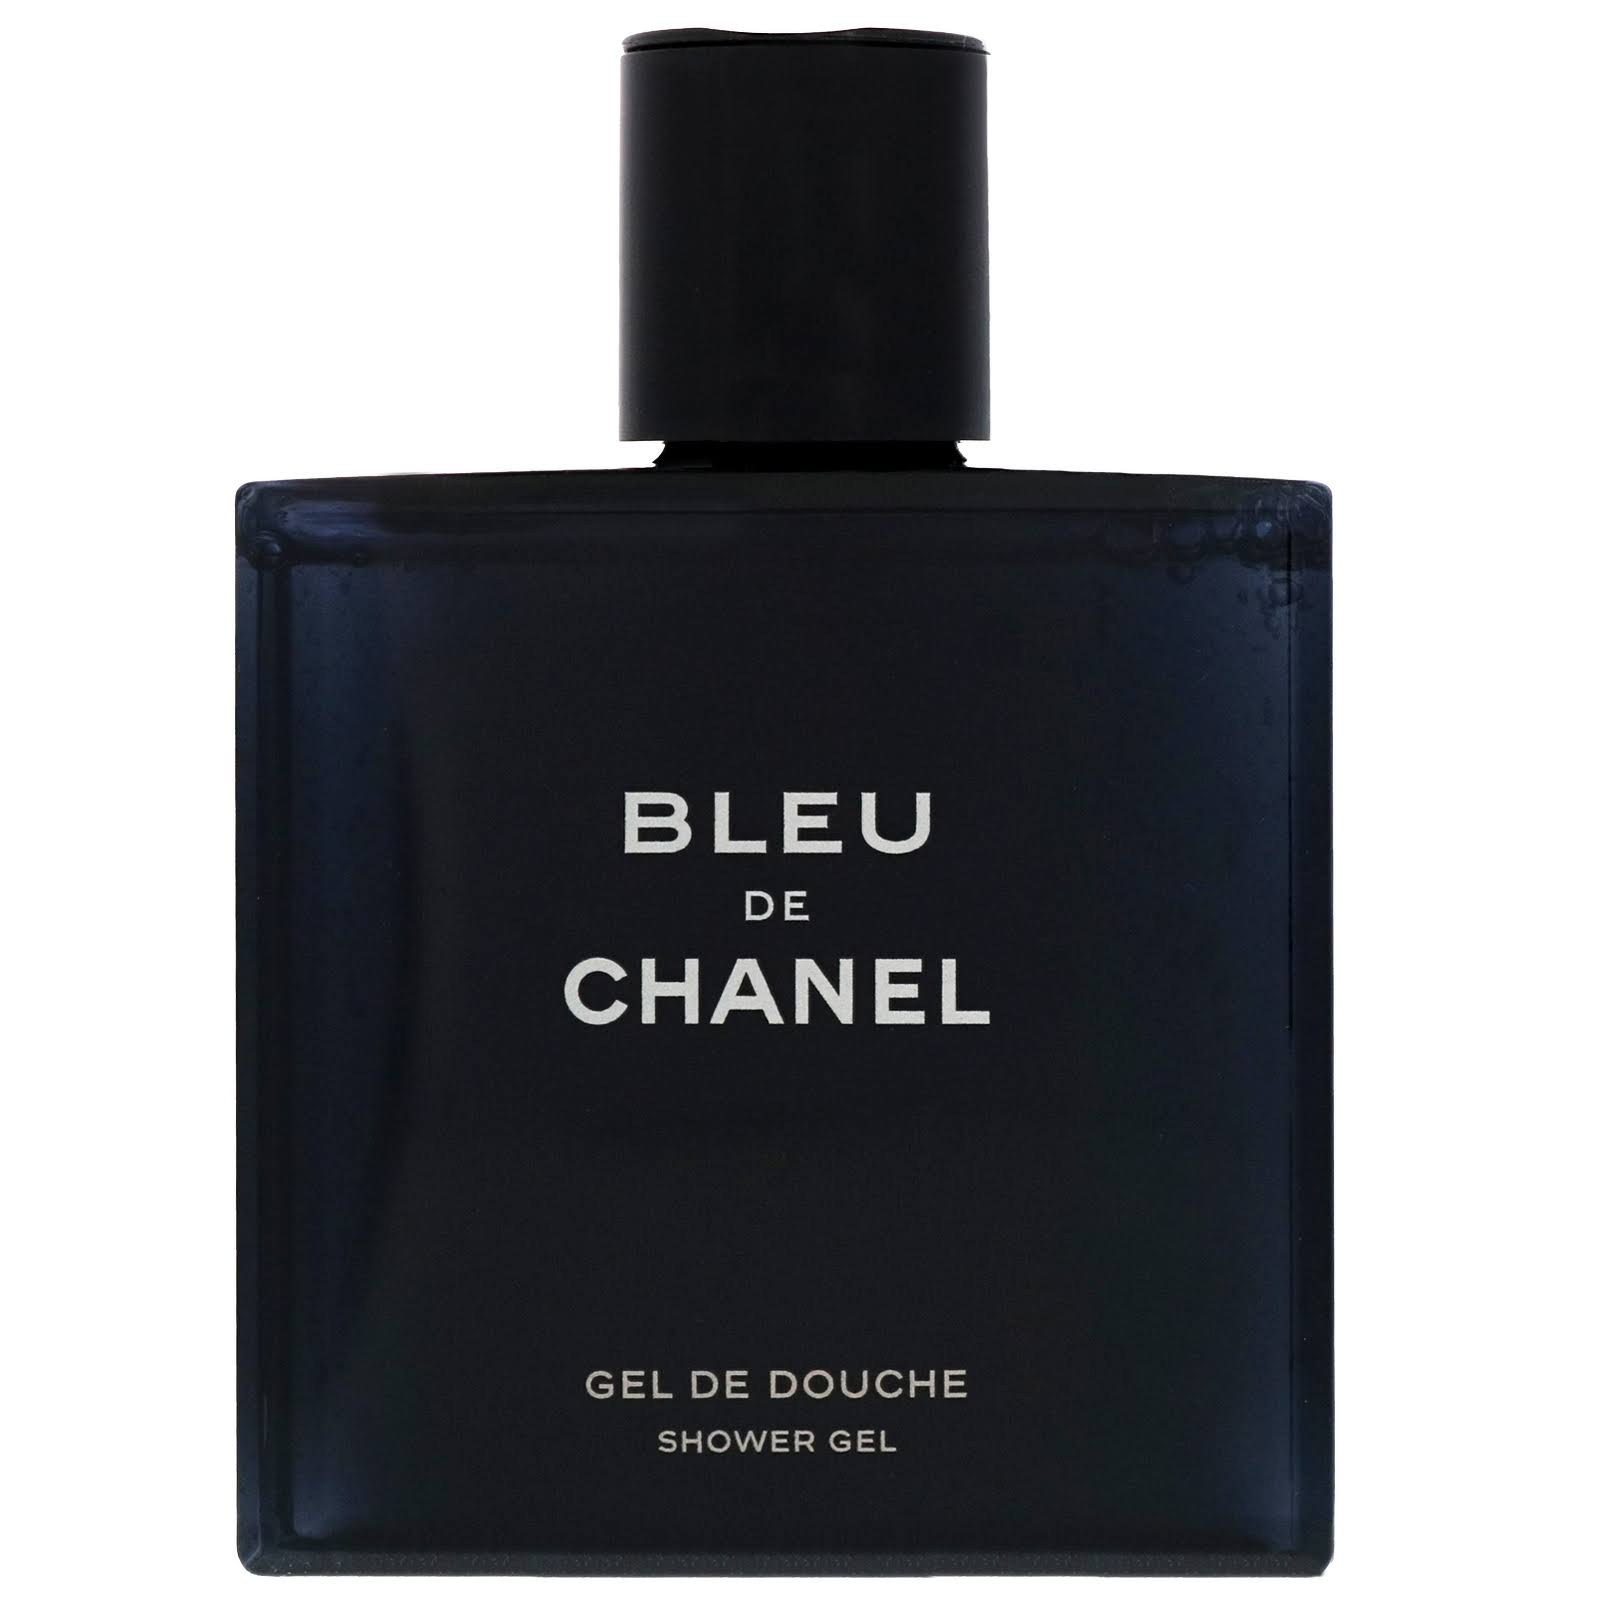 Bleu De Chanel Shower Gel - 200mL